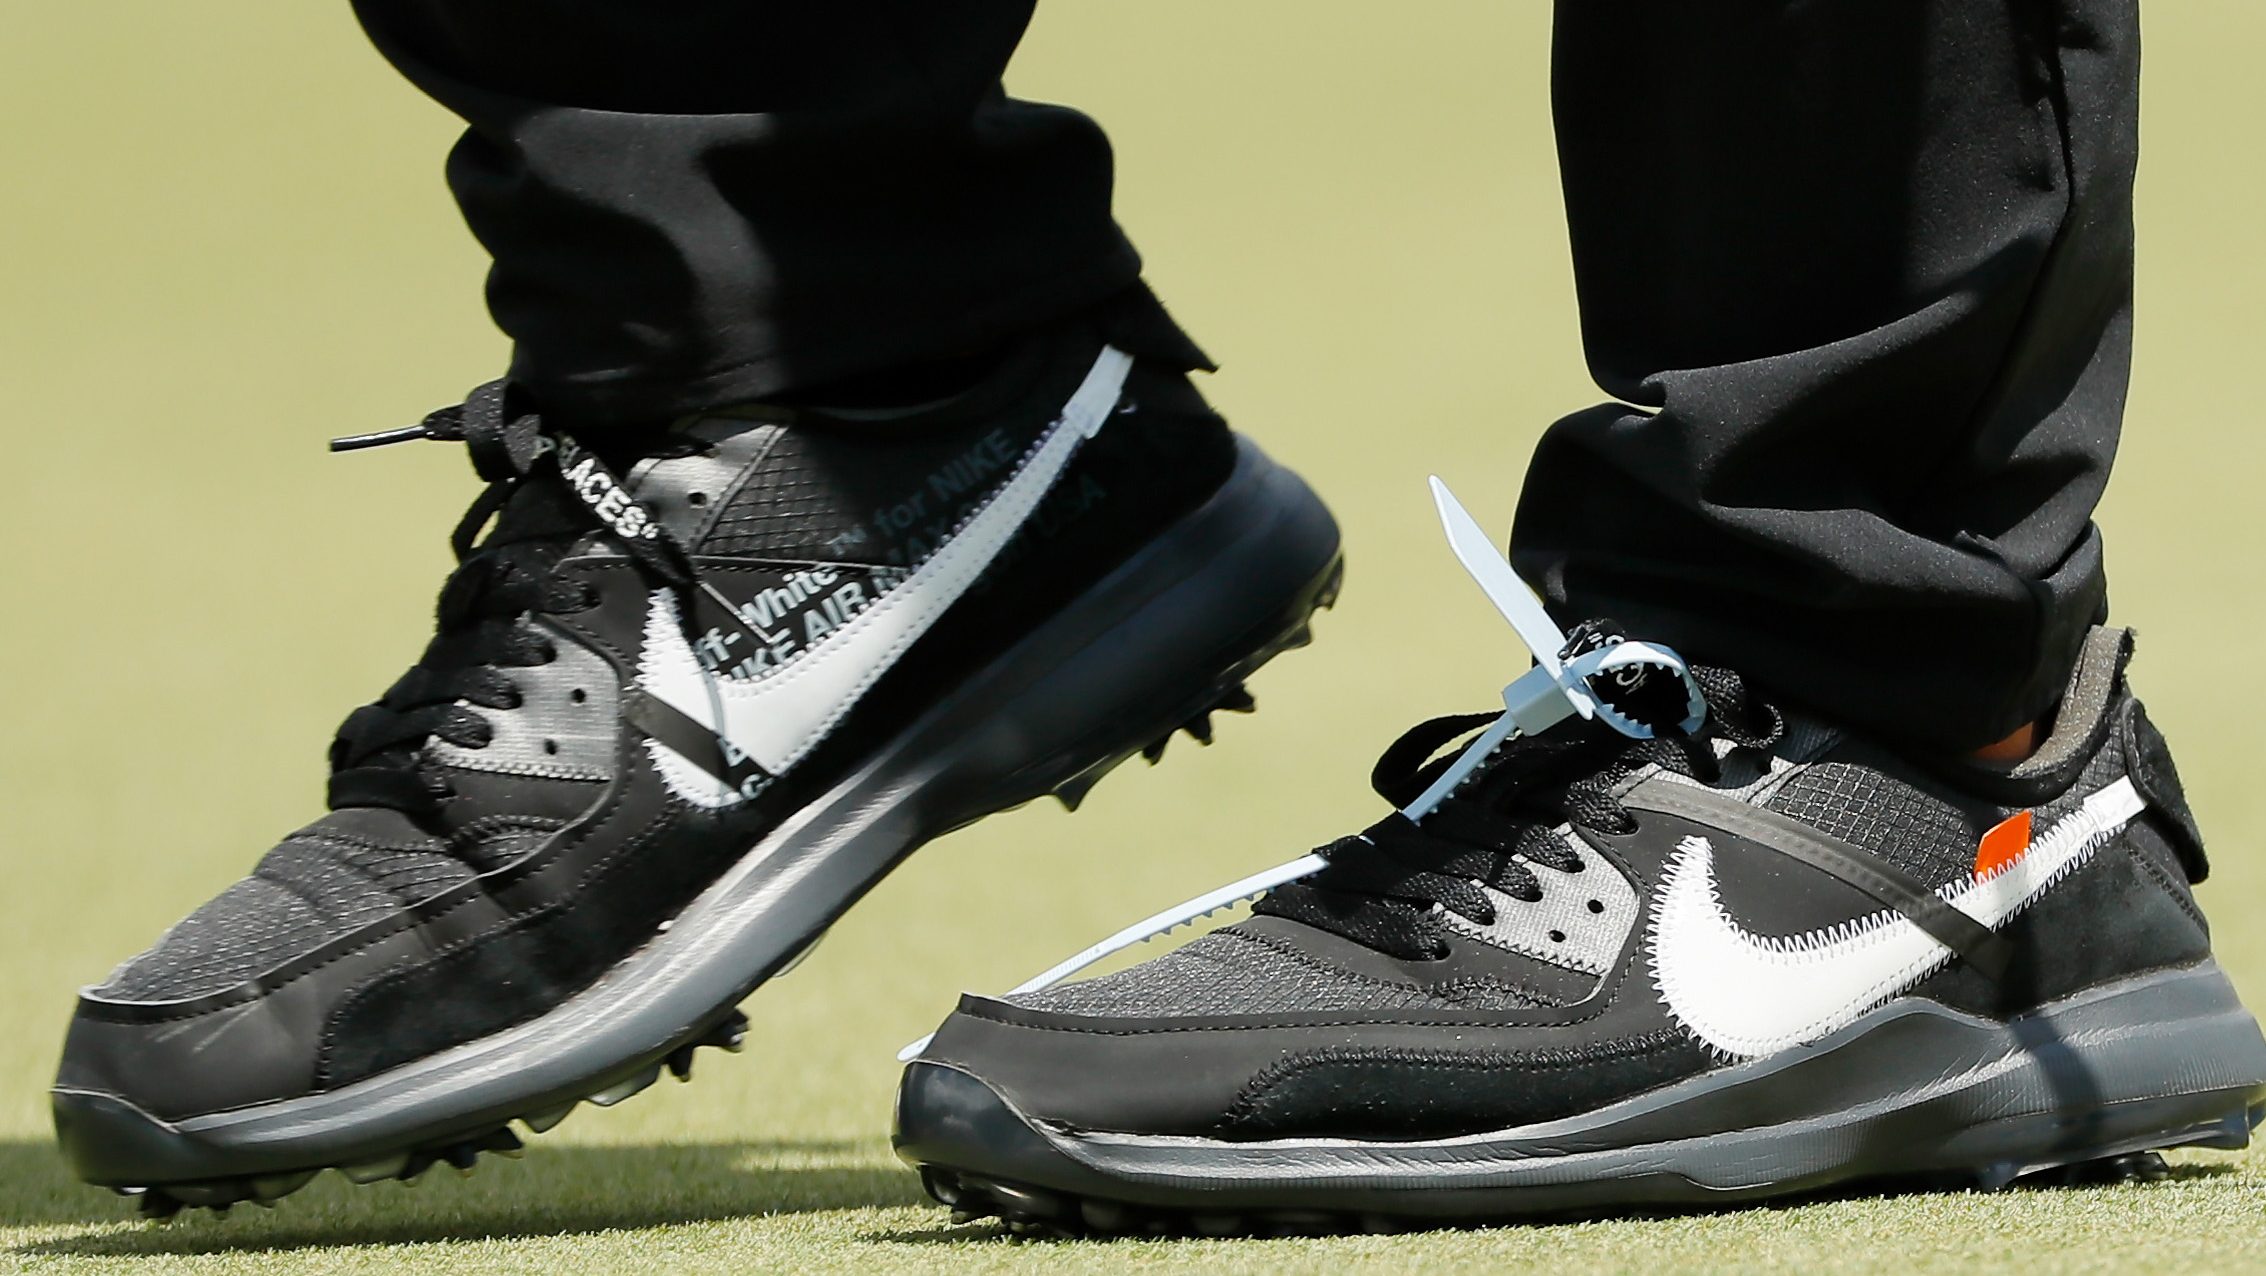 Brooks Koepka’s Shoes Golfer Rocks Nike OffWhite Tags